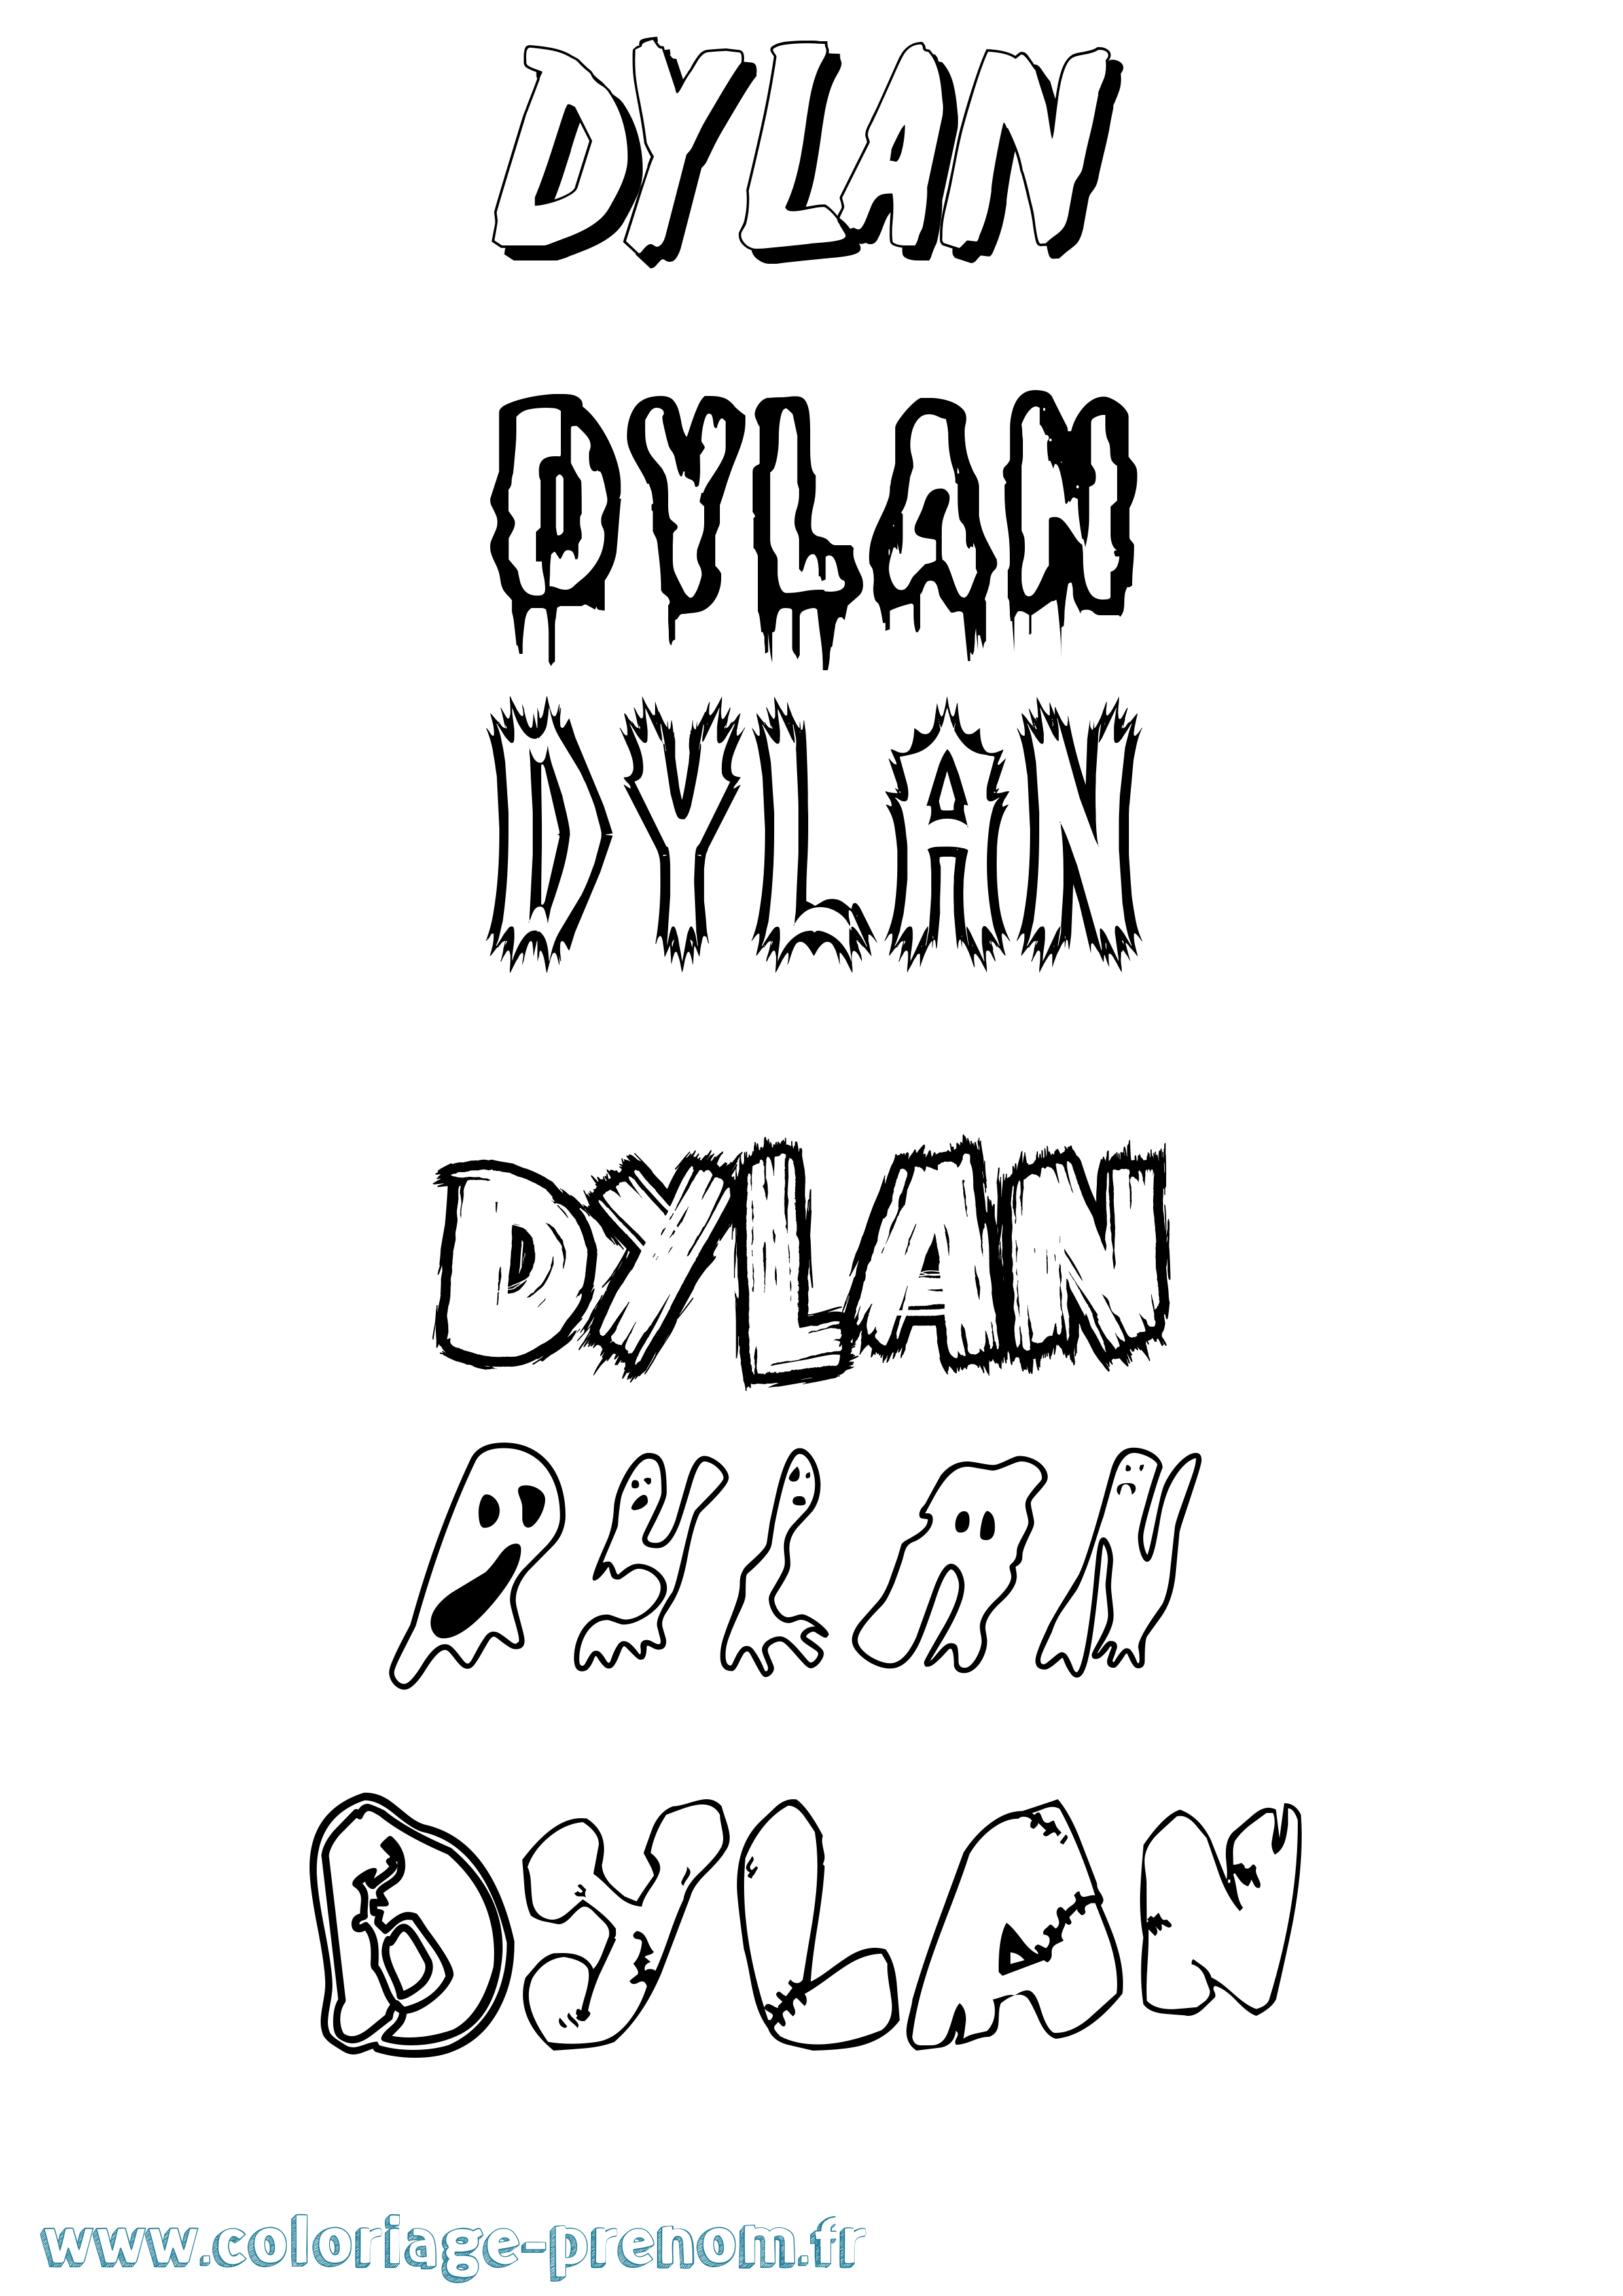 Coloriage prénom Dylan Frisson